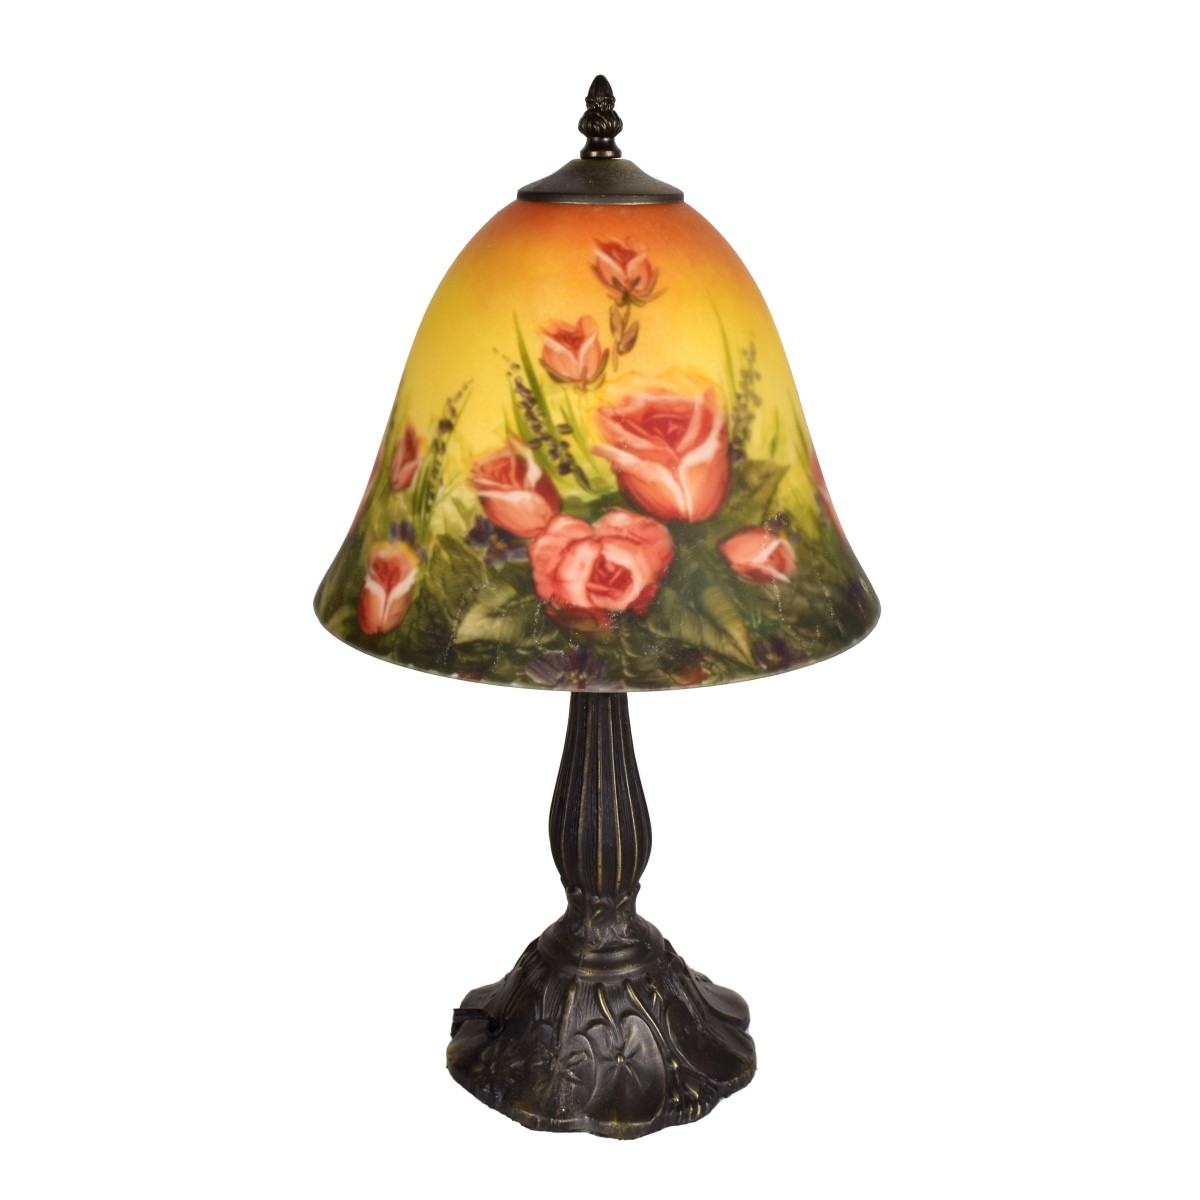 Vintage Reverse Painted Lamp